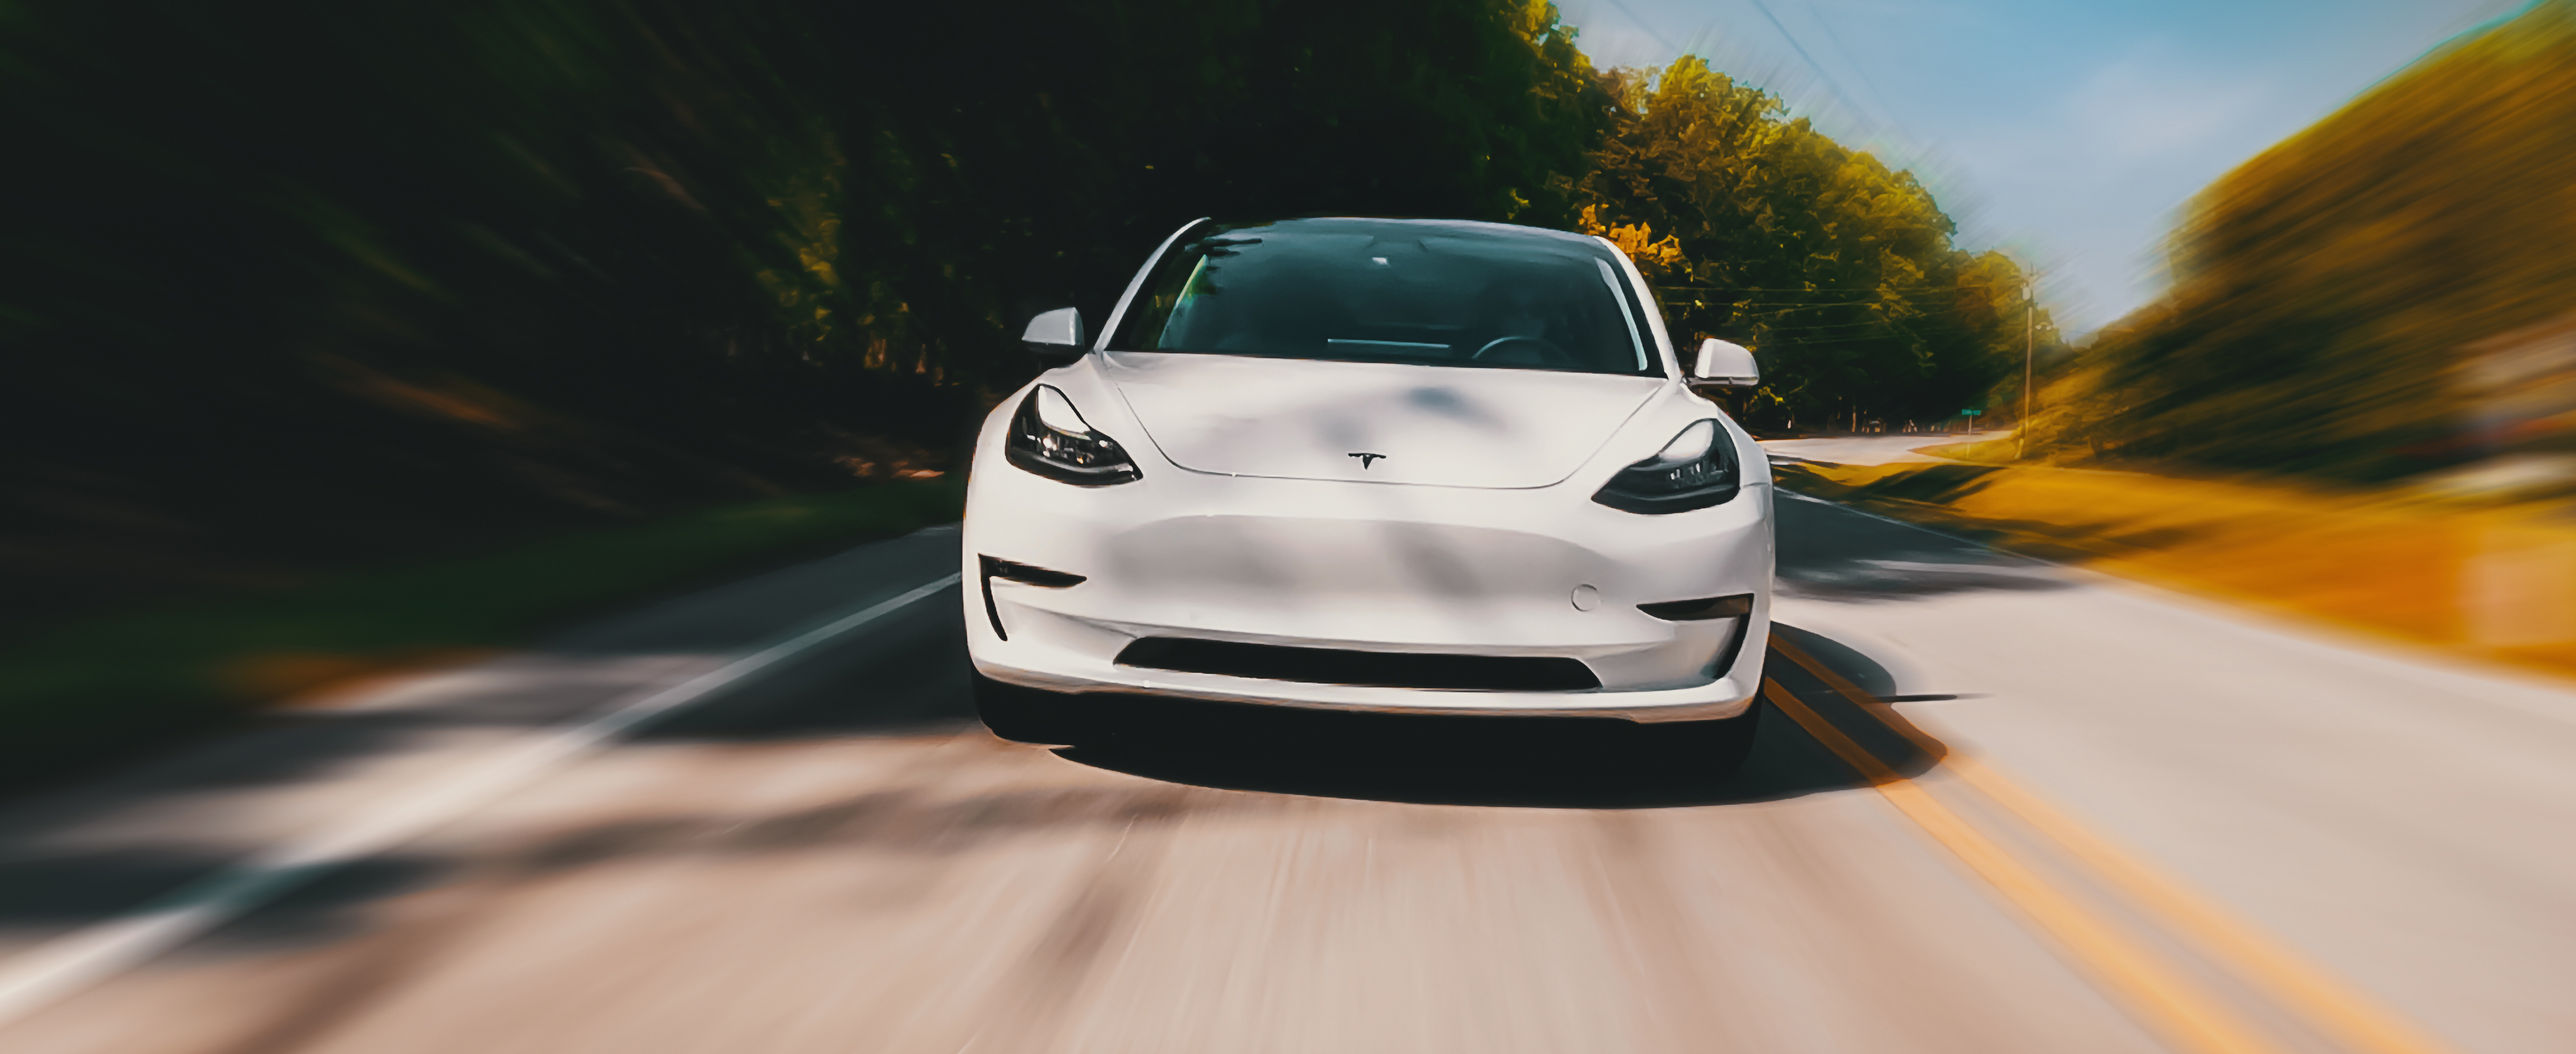 Encore un effet d’annonce ? Selon Elon Musk, le système de conduite autonome arriverait dès la fin de l’année 2023. © Tierney, Adobe Stock